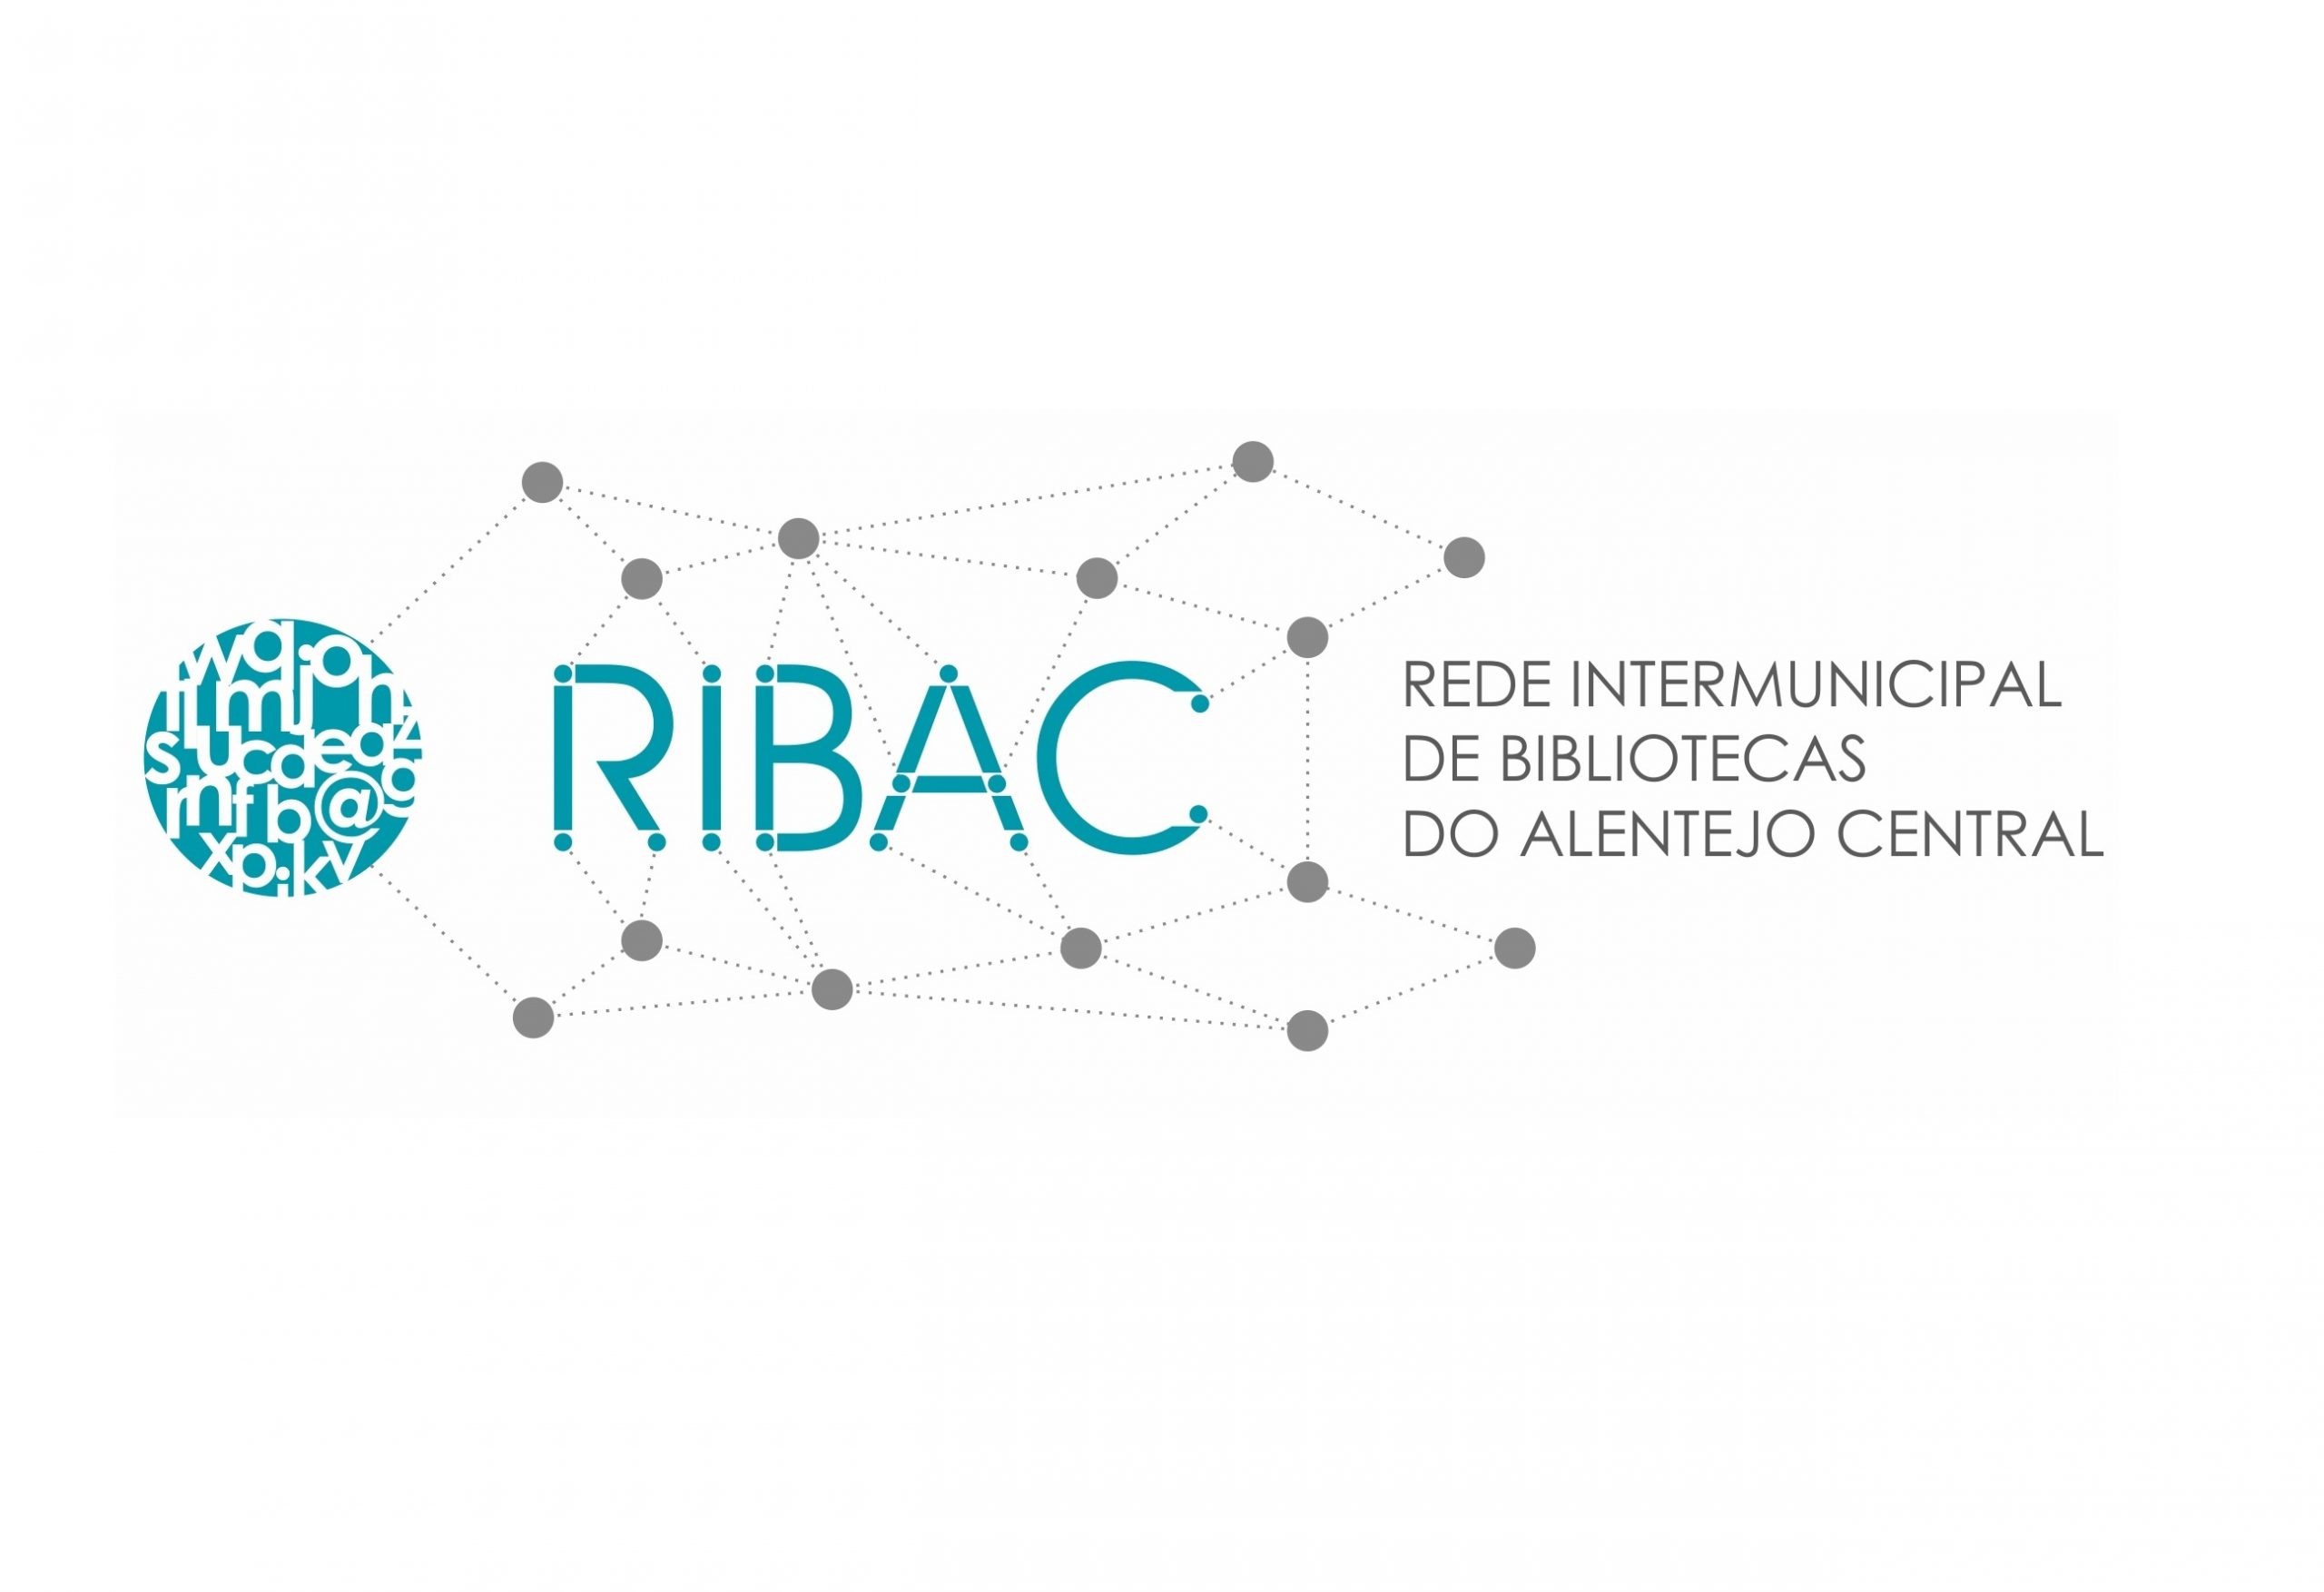 (Português) Grupo de Trabalho da Rede Intermunicipal de Bibliotecas do Alentejo Central elegeu Núcleo Coordenador para o mandato 2023/2025